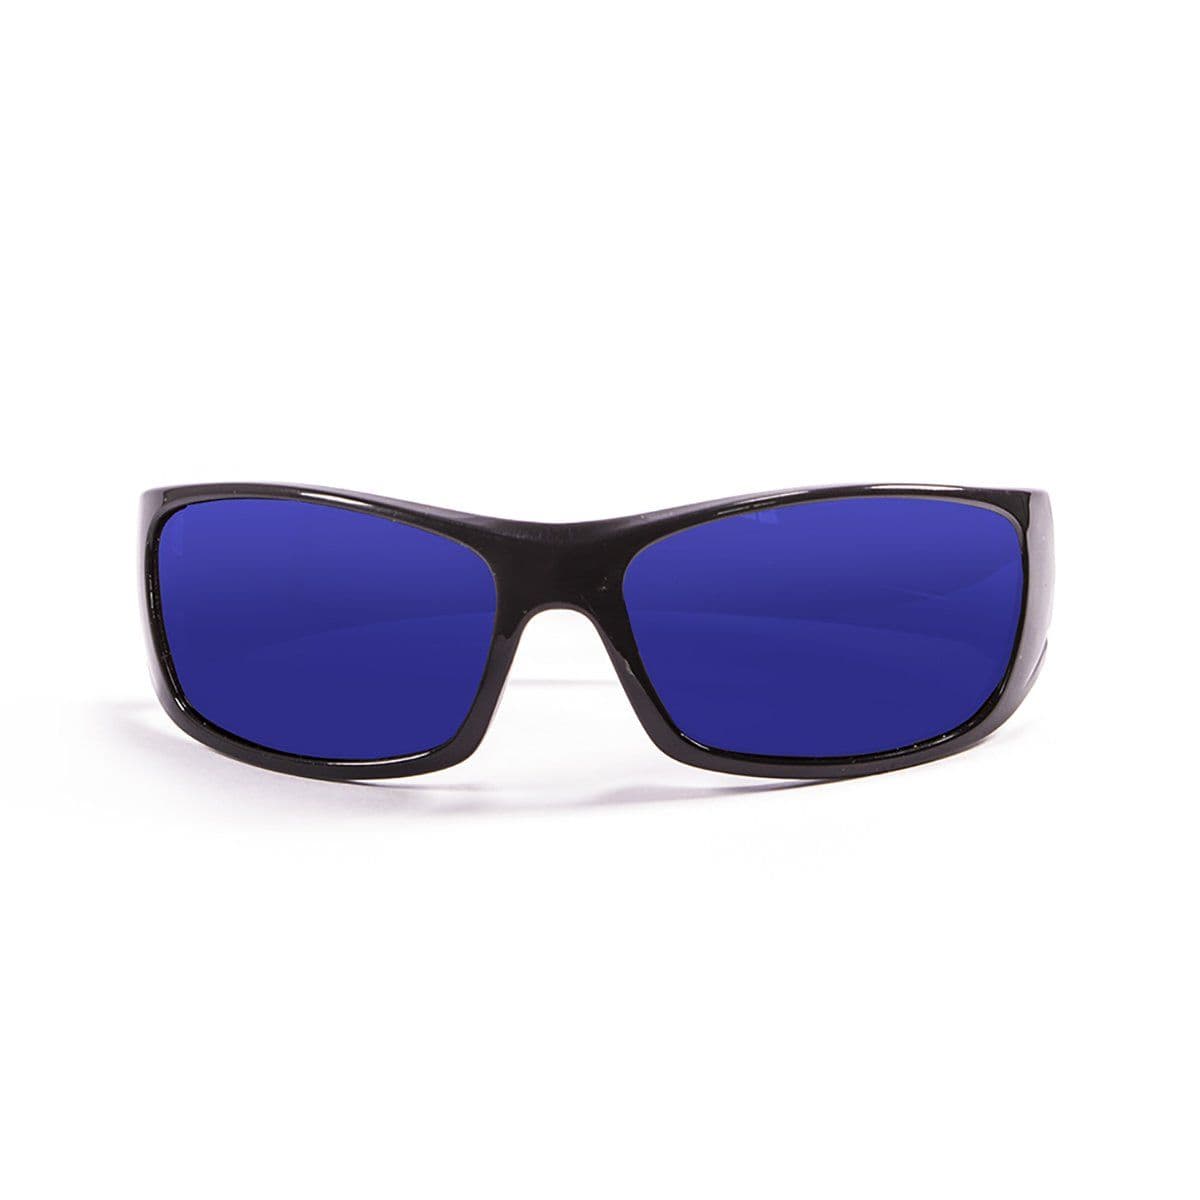 Ocean Bermuda Water Sport Sunglasses